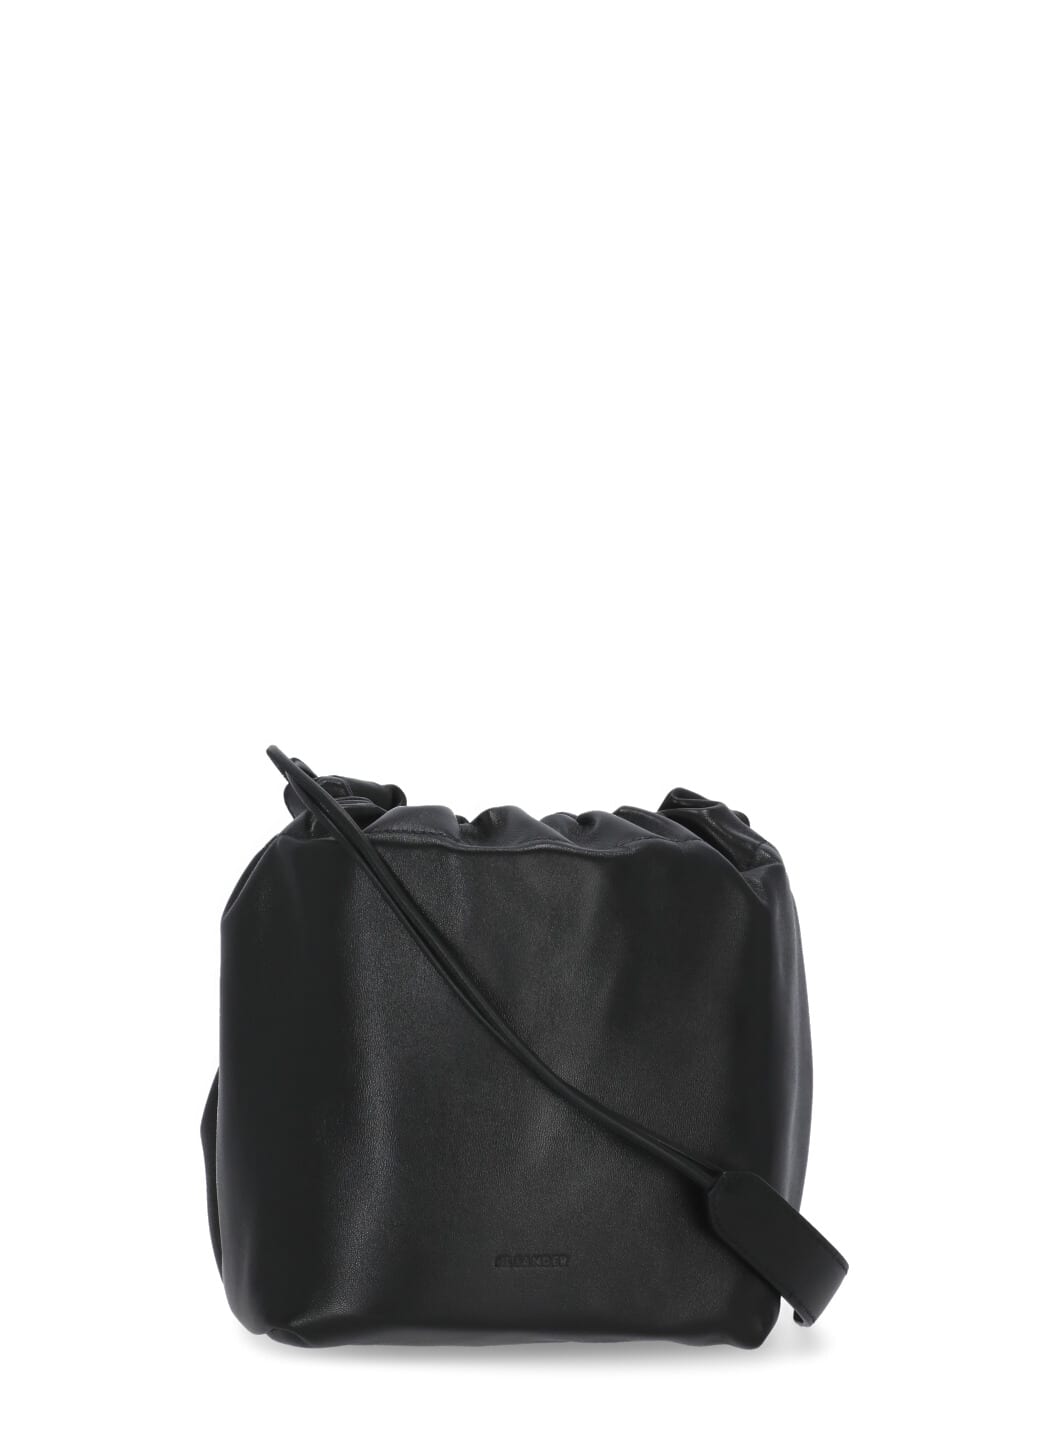 Jil Sander Nappa Leather Dumpling Shoulder Bag in Black